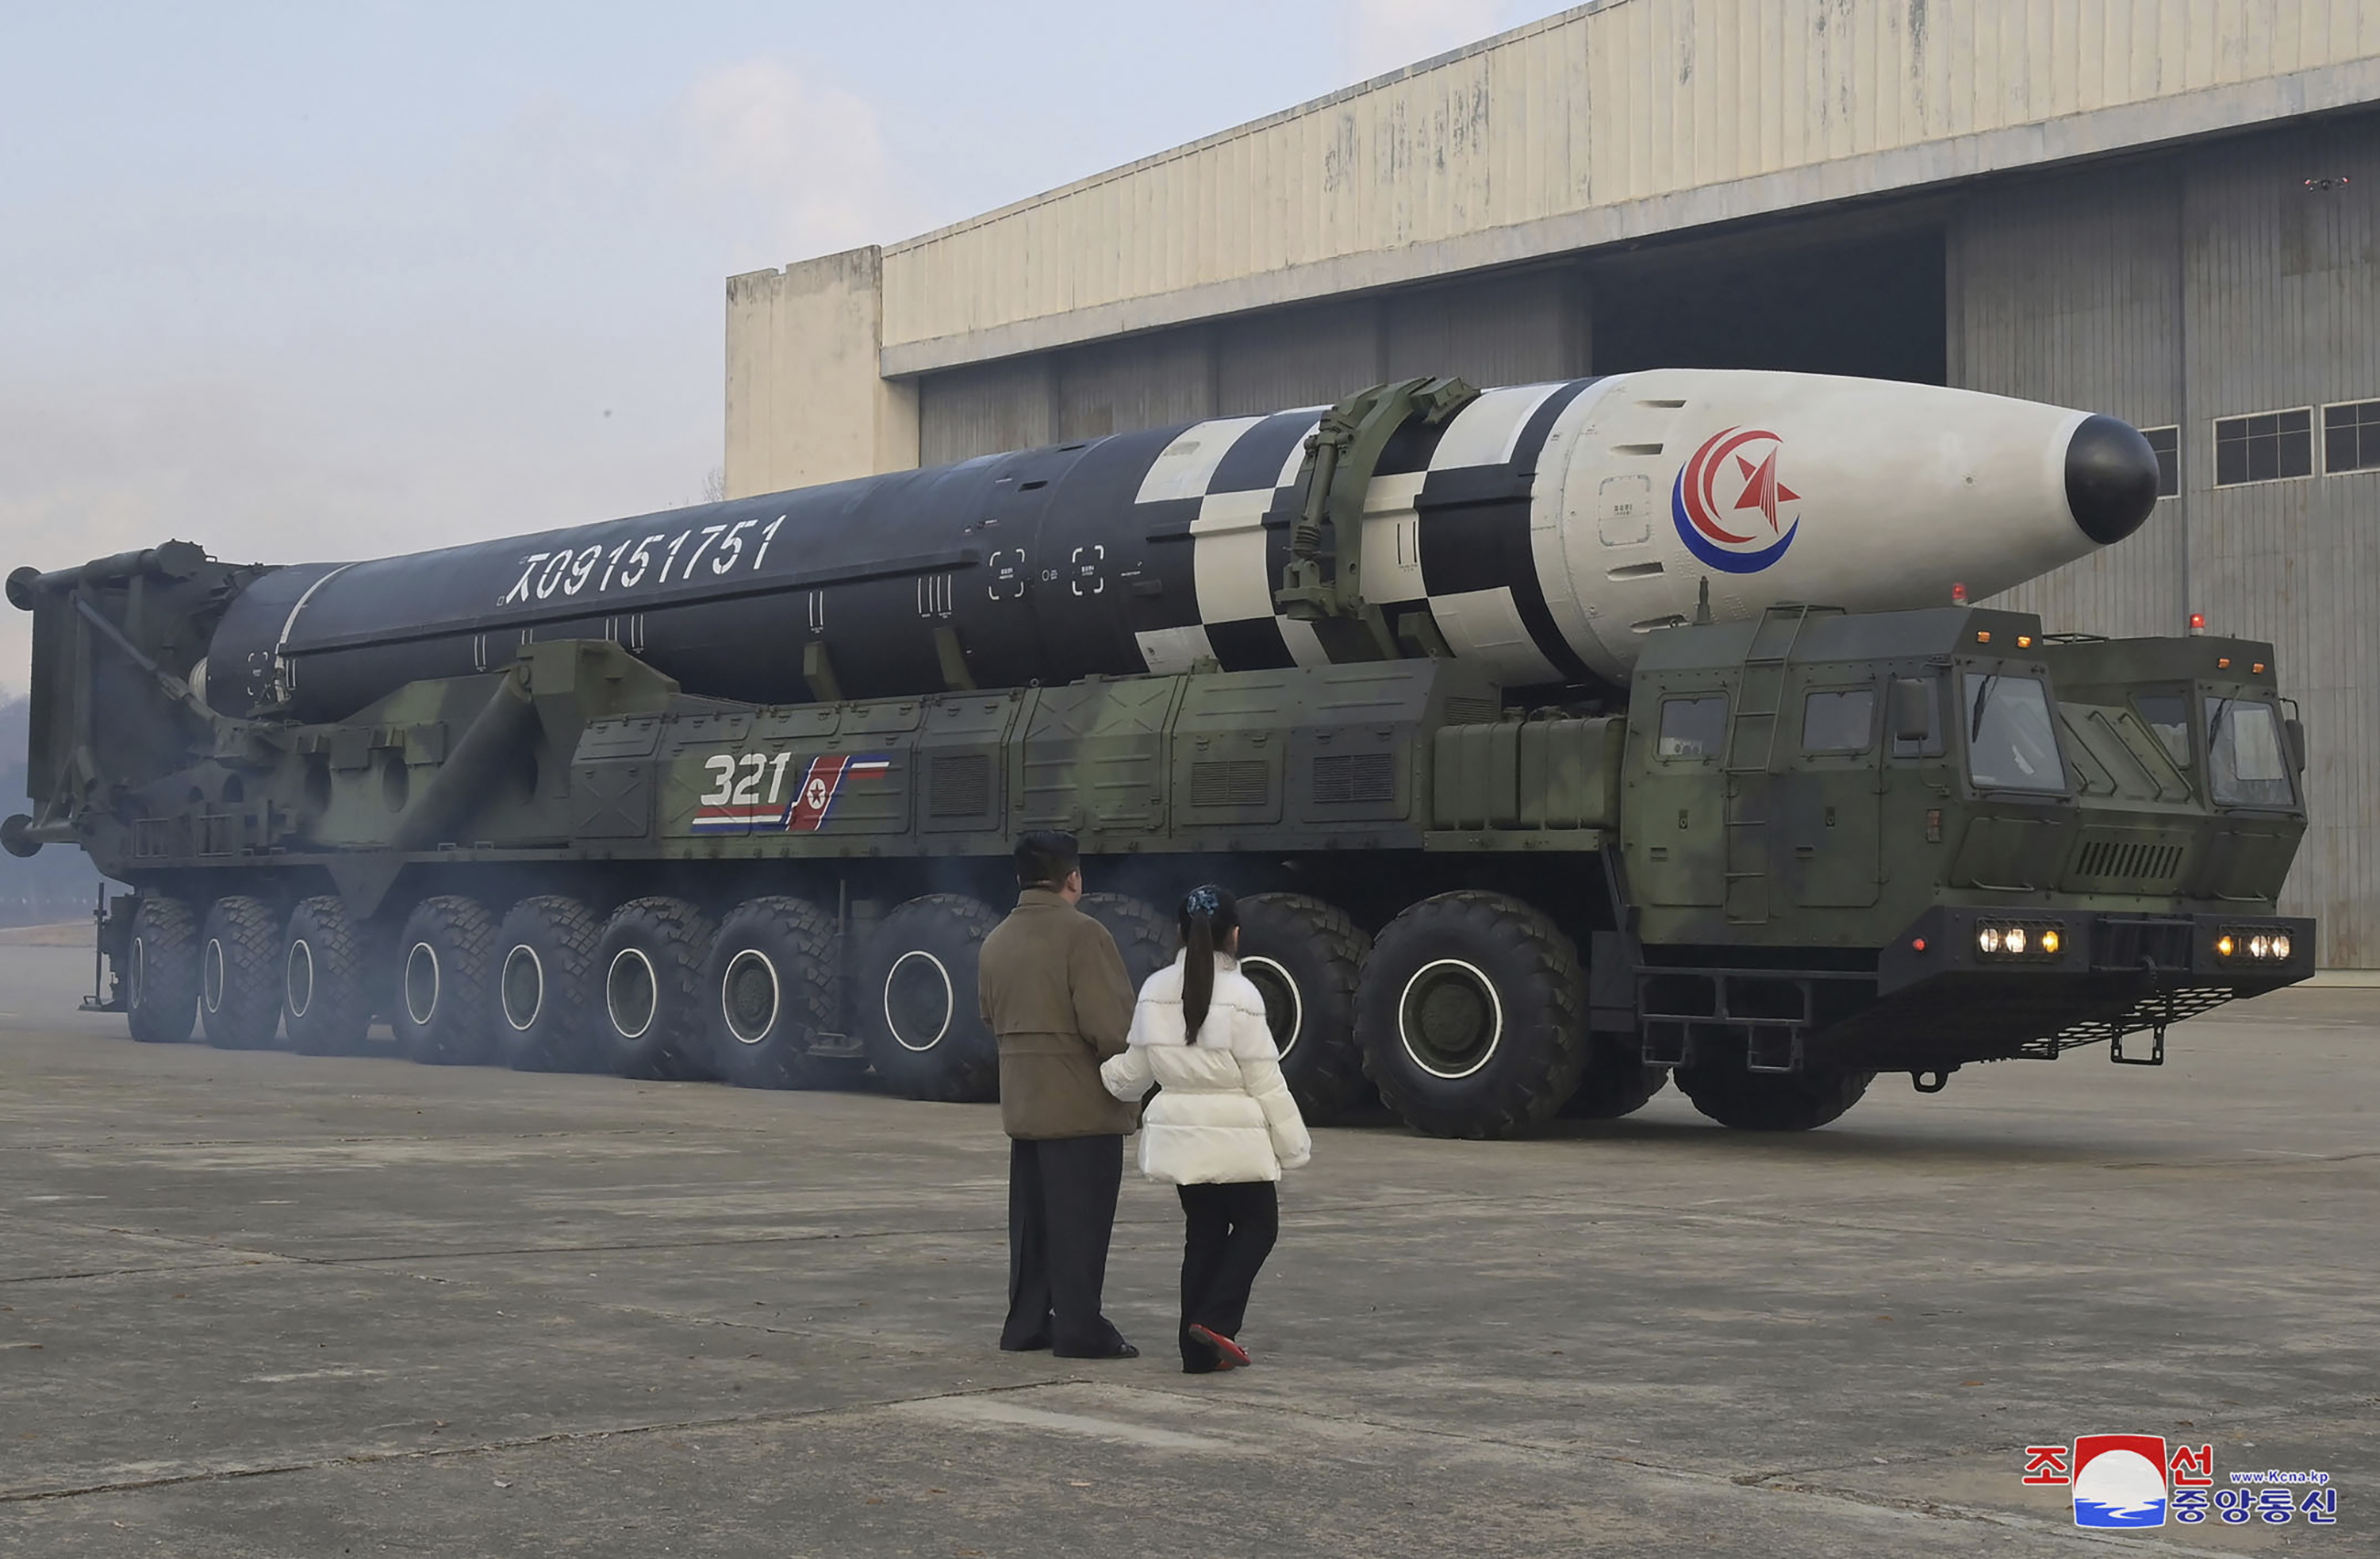 Noua "rachetă monstru" Hwasong-17 a Coreei de Nord, care a băgat spaima în întreaga lume 